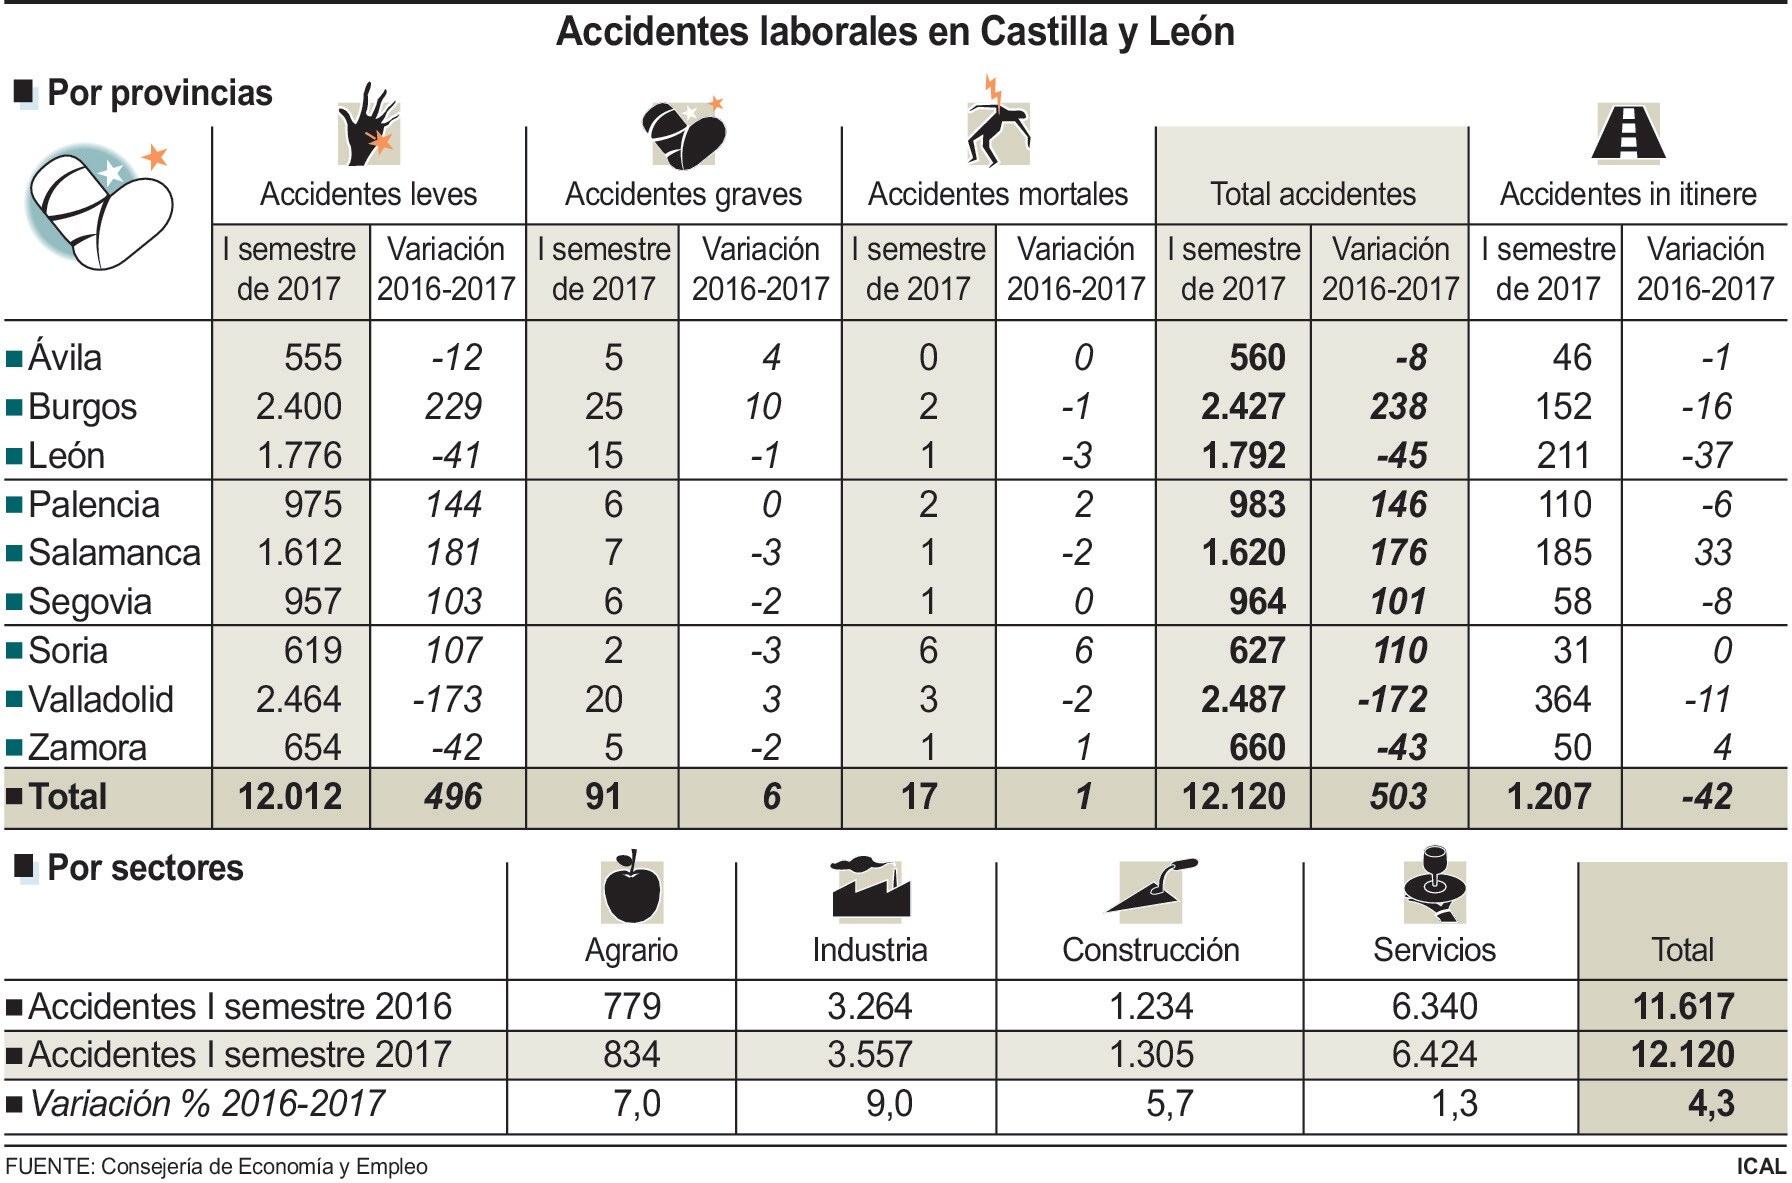 Accidentes laborales en Castilla y León